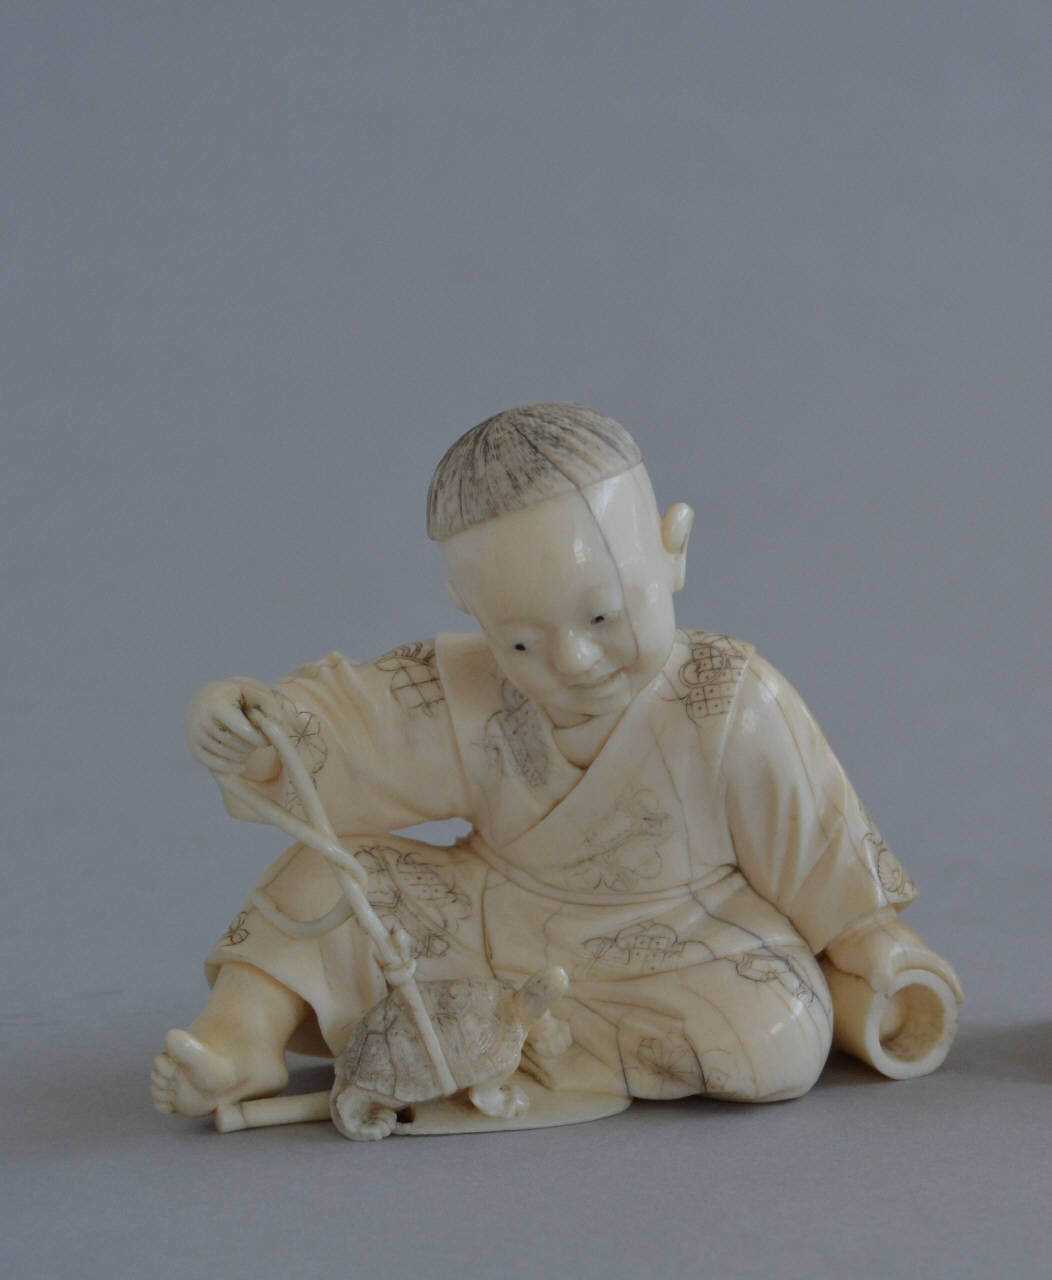 bambini che giocano (statuetta) - manifattura giapponese (fine/inizio secc. XIX/ XX)